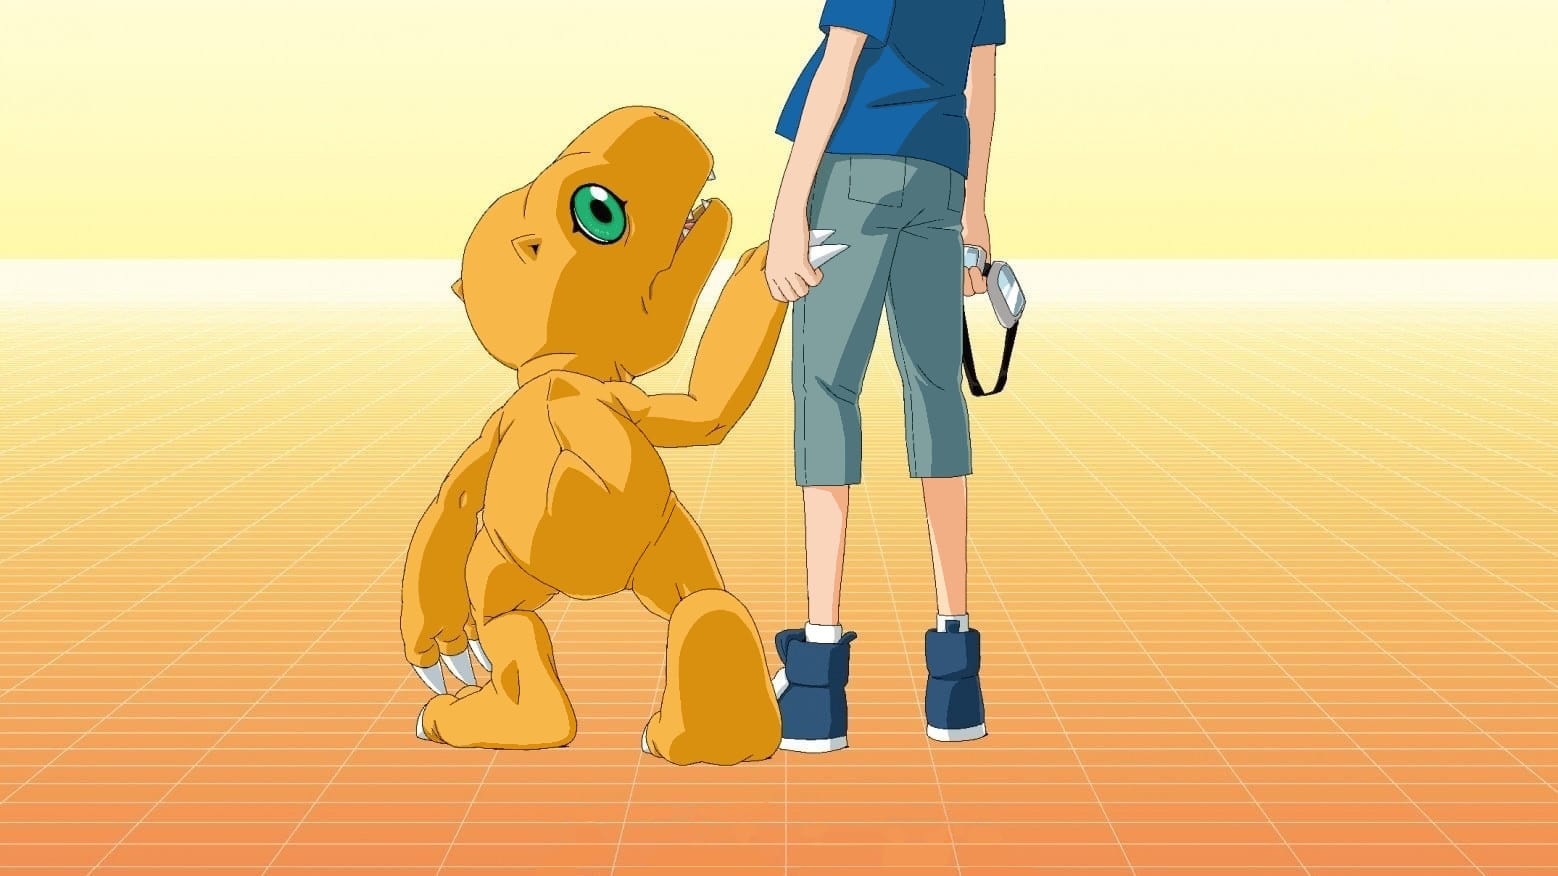 Digimon Adventure Last Evolution Kizuna – AdvDmo